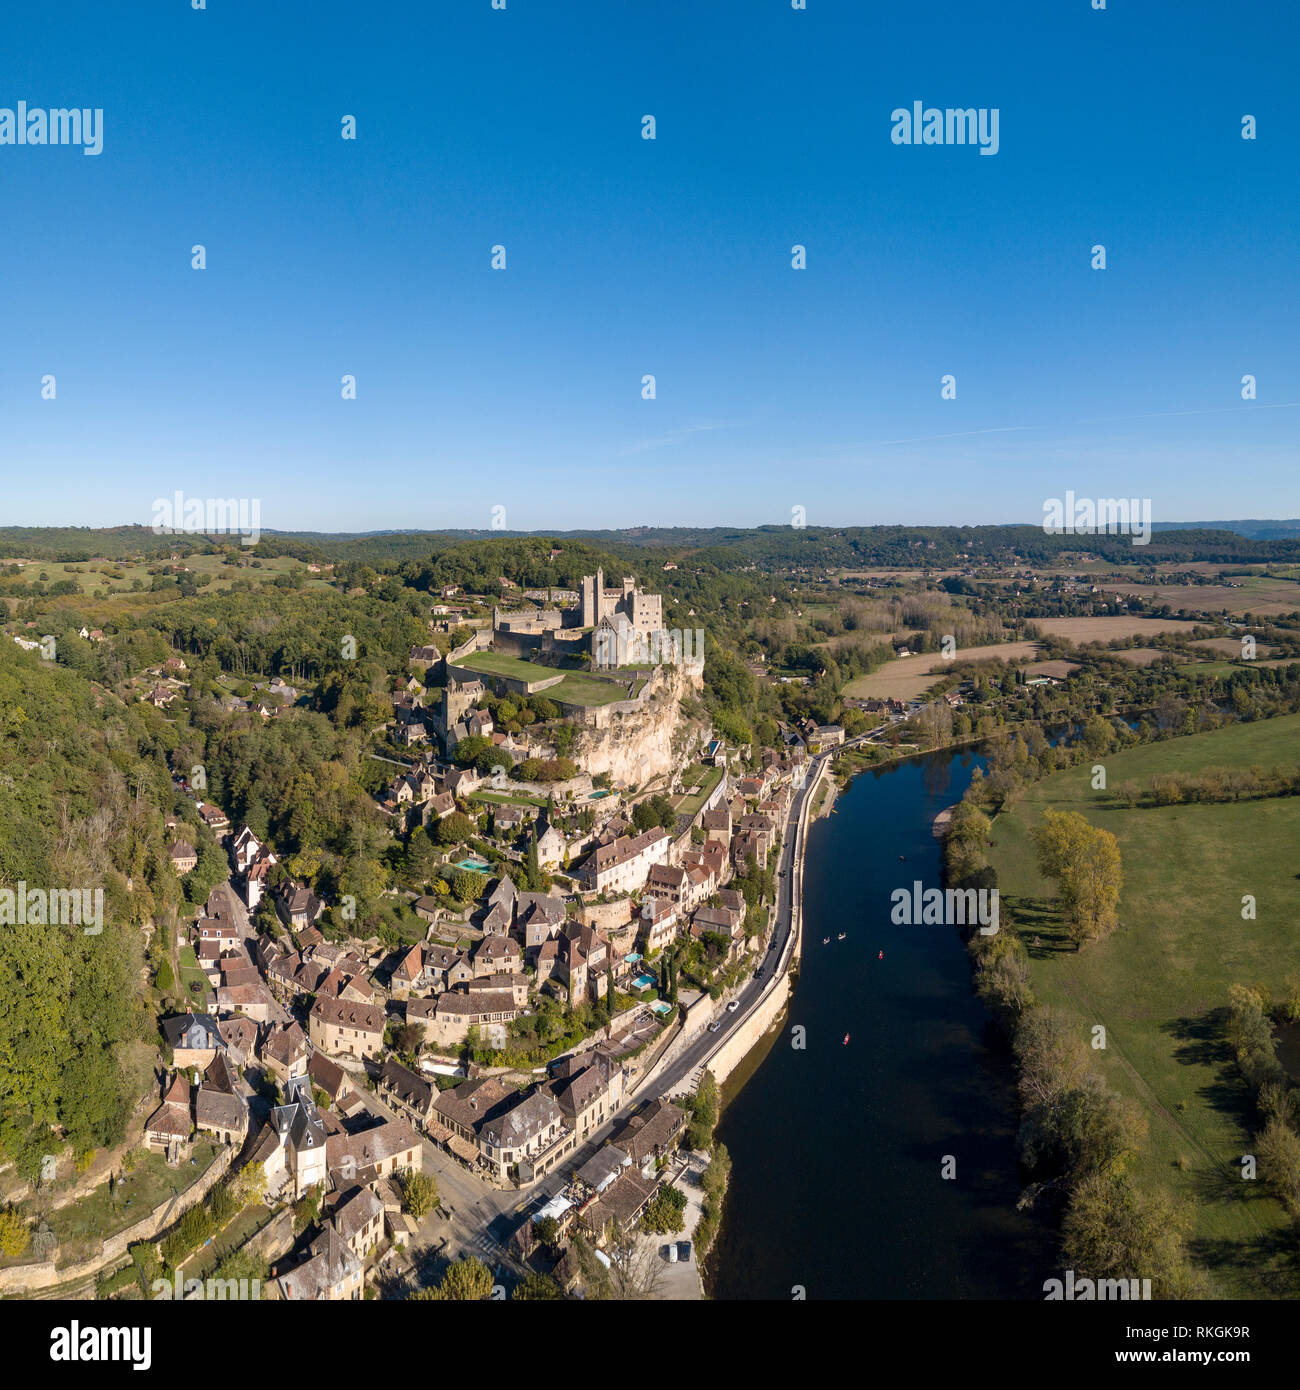 Chateau de Beynac, Beynac et Cazenac, auf den Felsen über dem Fluss Dordogne, Frankreich thront. Beynac ist als eines der schönsten Dörfer klassifiziert Stockfoto